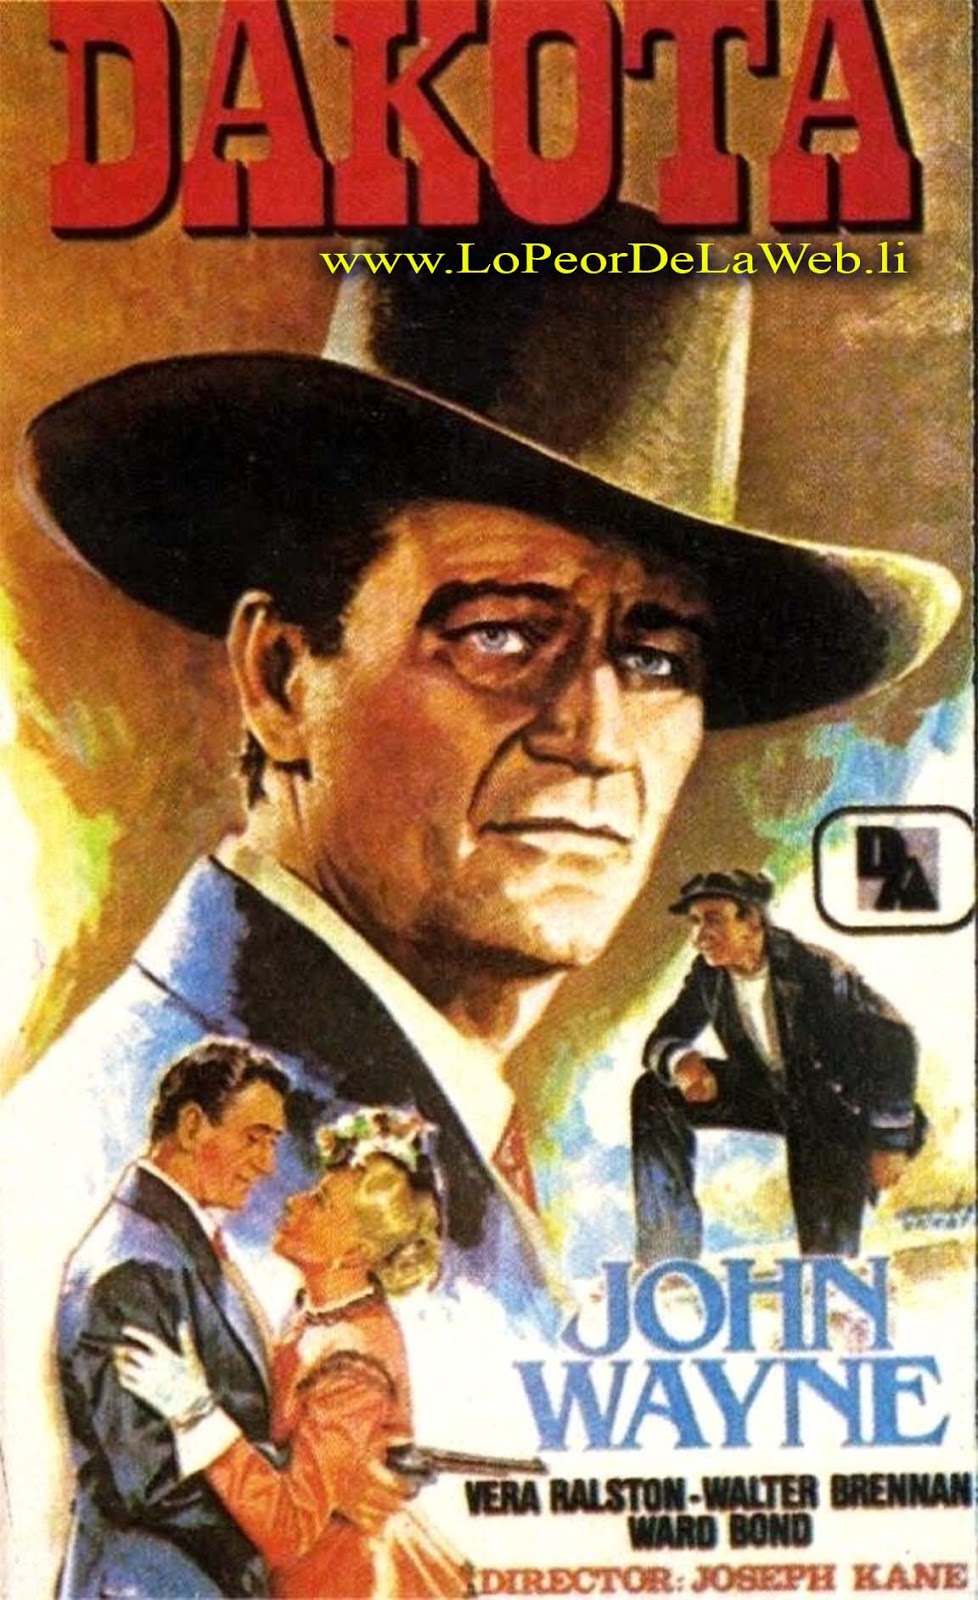 Dakota (1945 / Western / John Wayne)